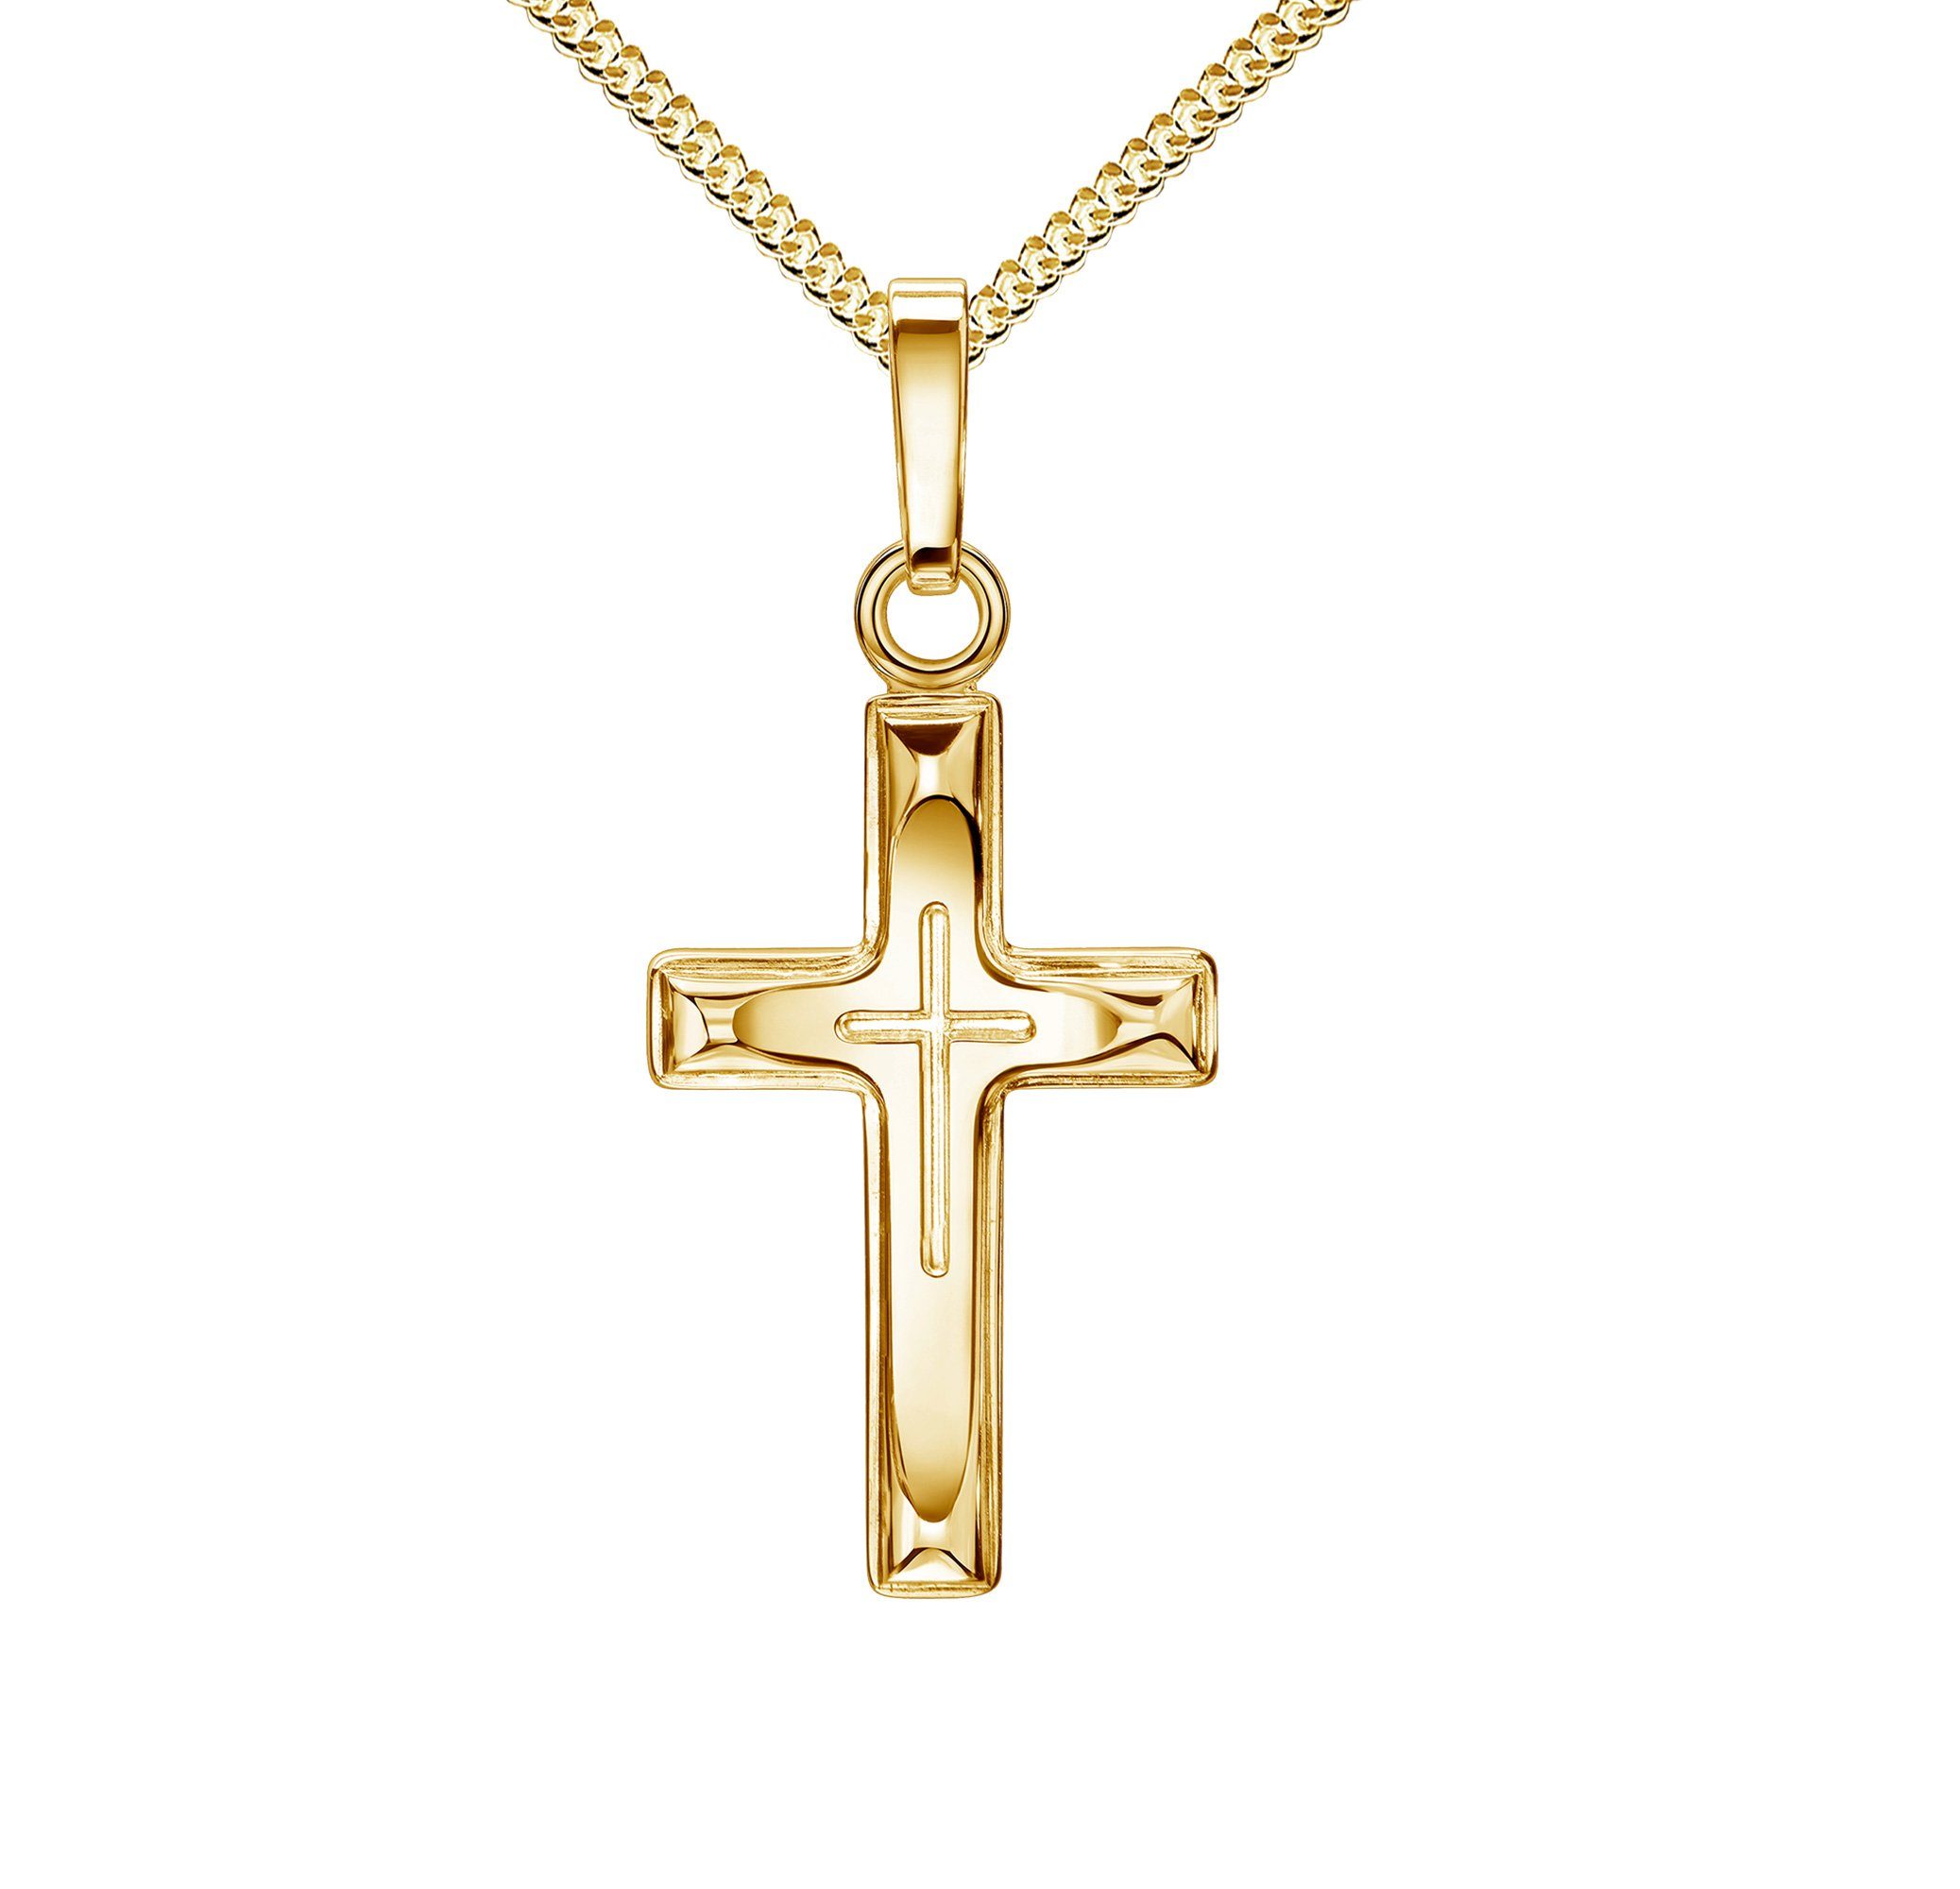 JEVELION Kreuzkette Kreuz in Kreuz Anhänger Taufkreuz 750 Gold - Made in Germany (Goldkreuz, für Damen und Kinder), Mit Halskette vergoldet- Länge wählbar 36 - 70 cm.